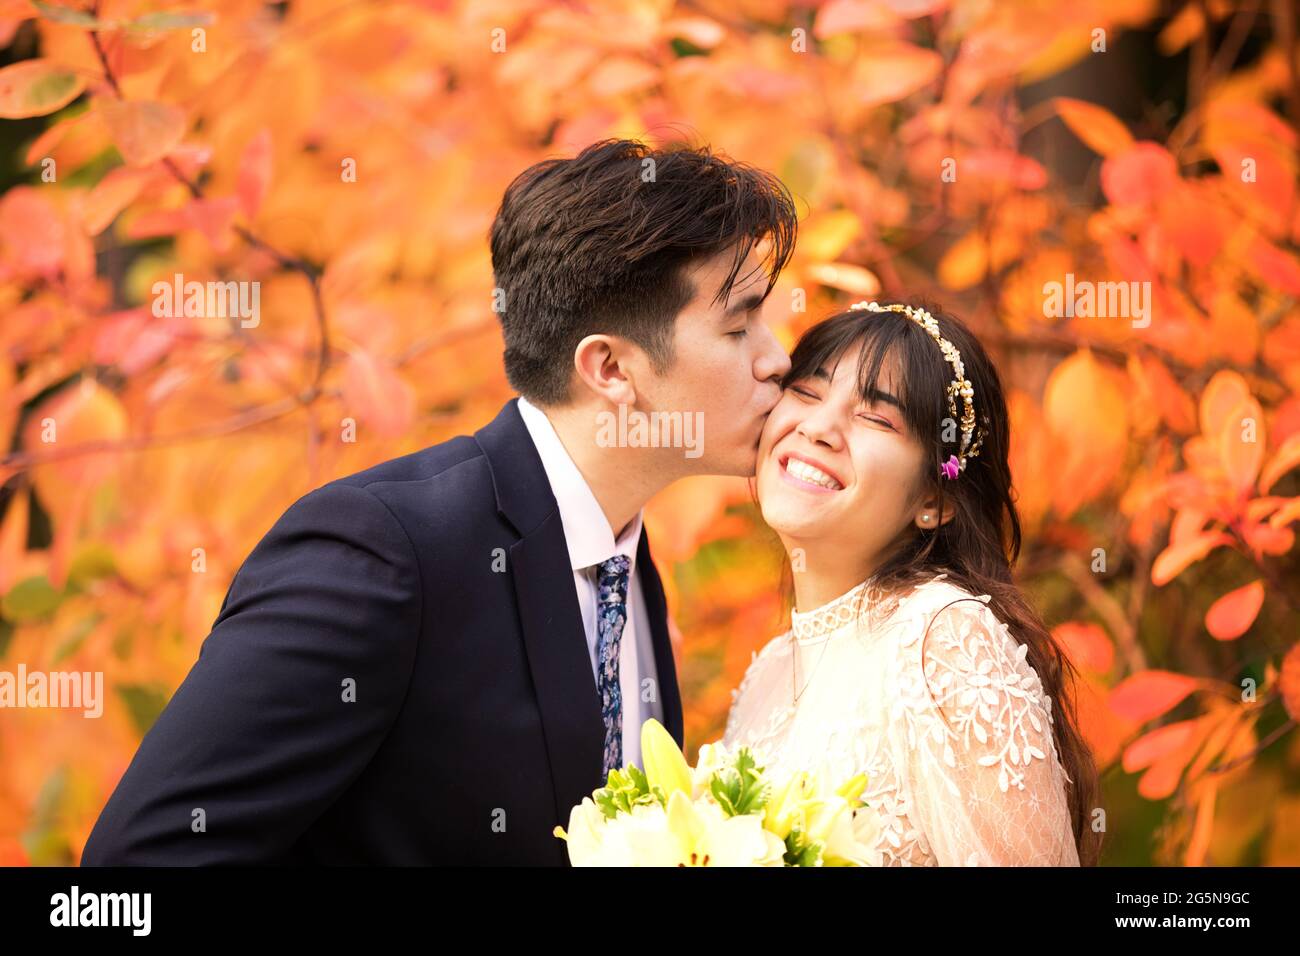 Biracial sposata coppia appena sposata baciando all'aperto da brillanti foglie arancioni d'autunno Foto Stock